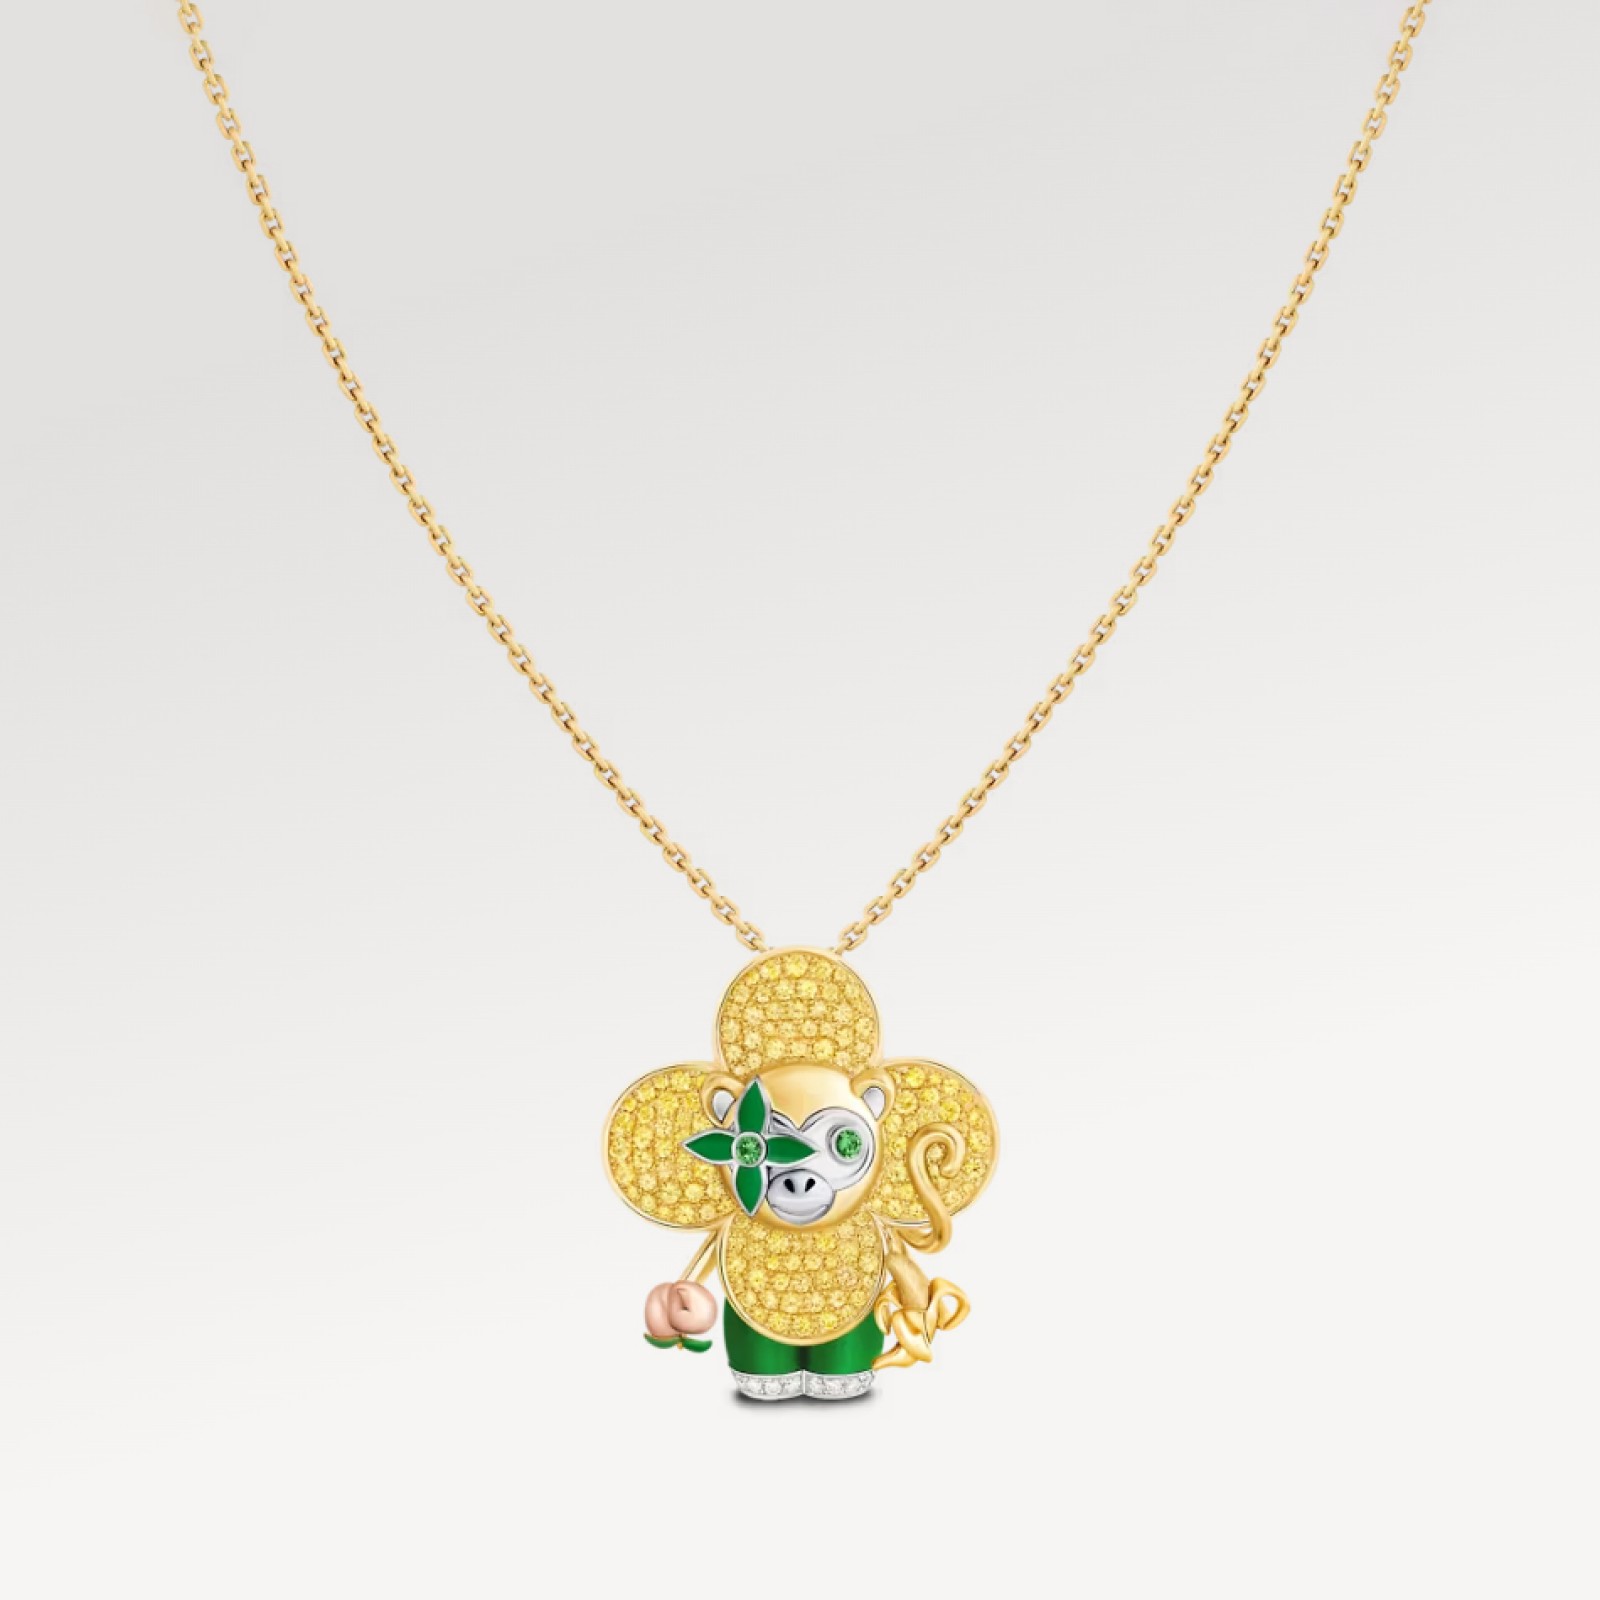 Vivienne Monkey Pendant, 3 Golds, Lacquer, Diamonds & Colored Gemstones